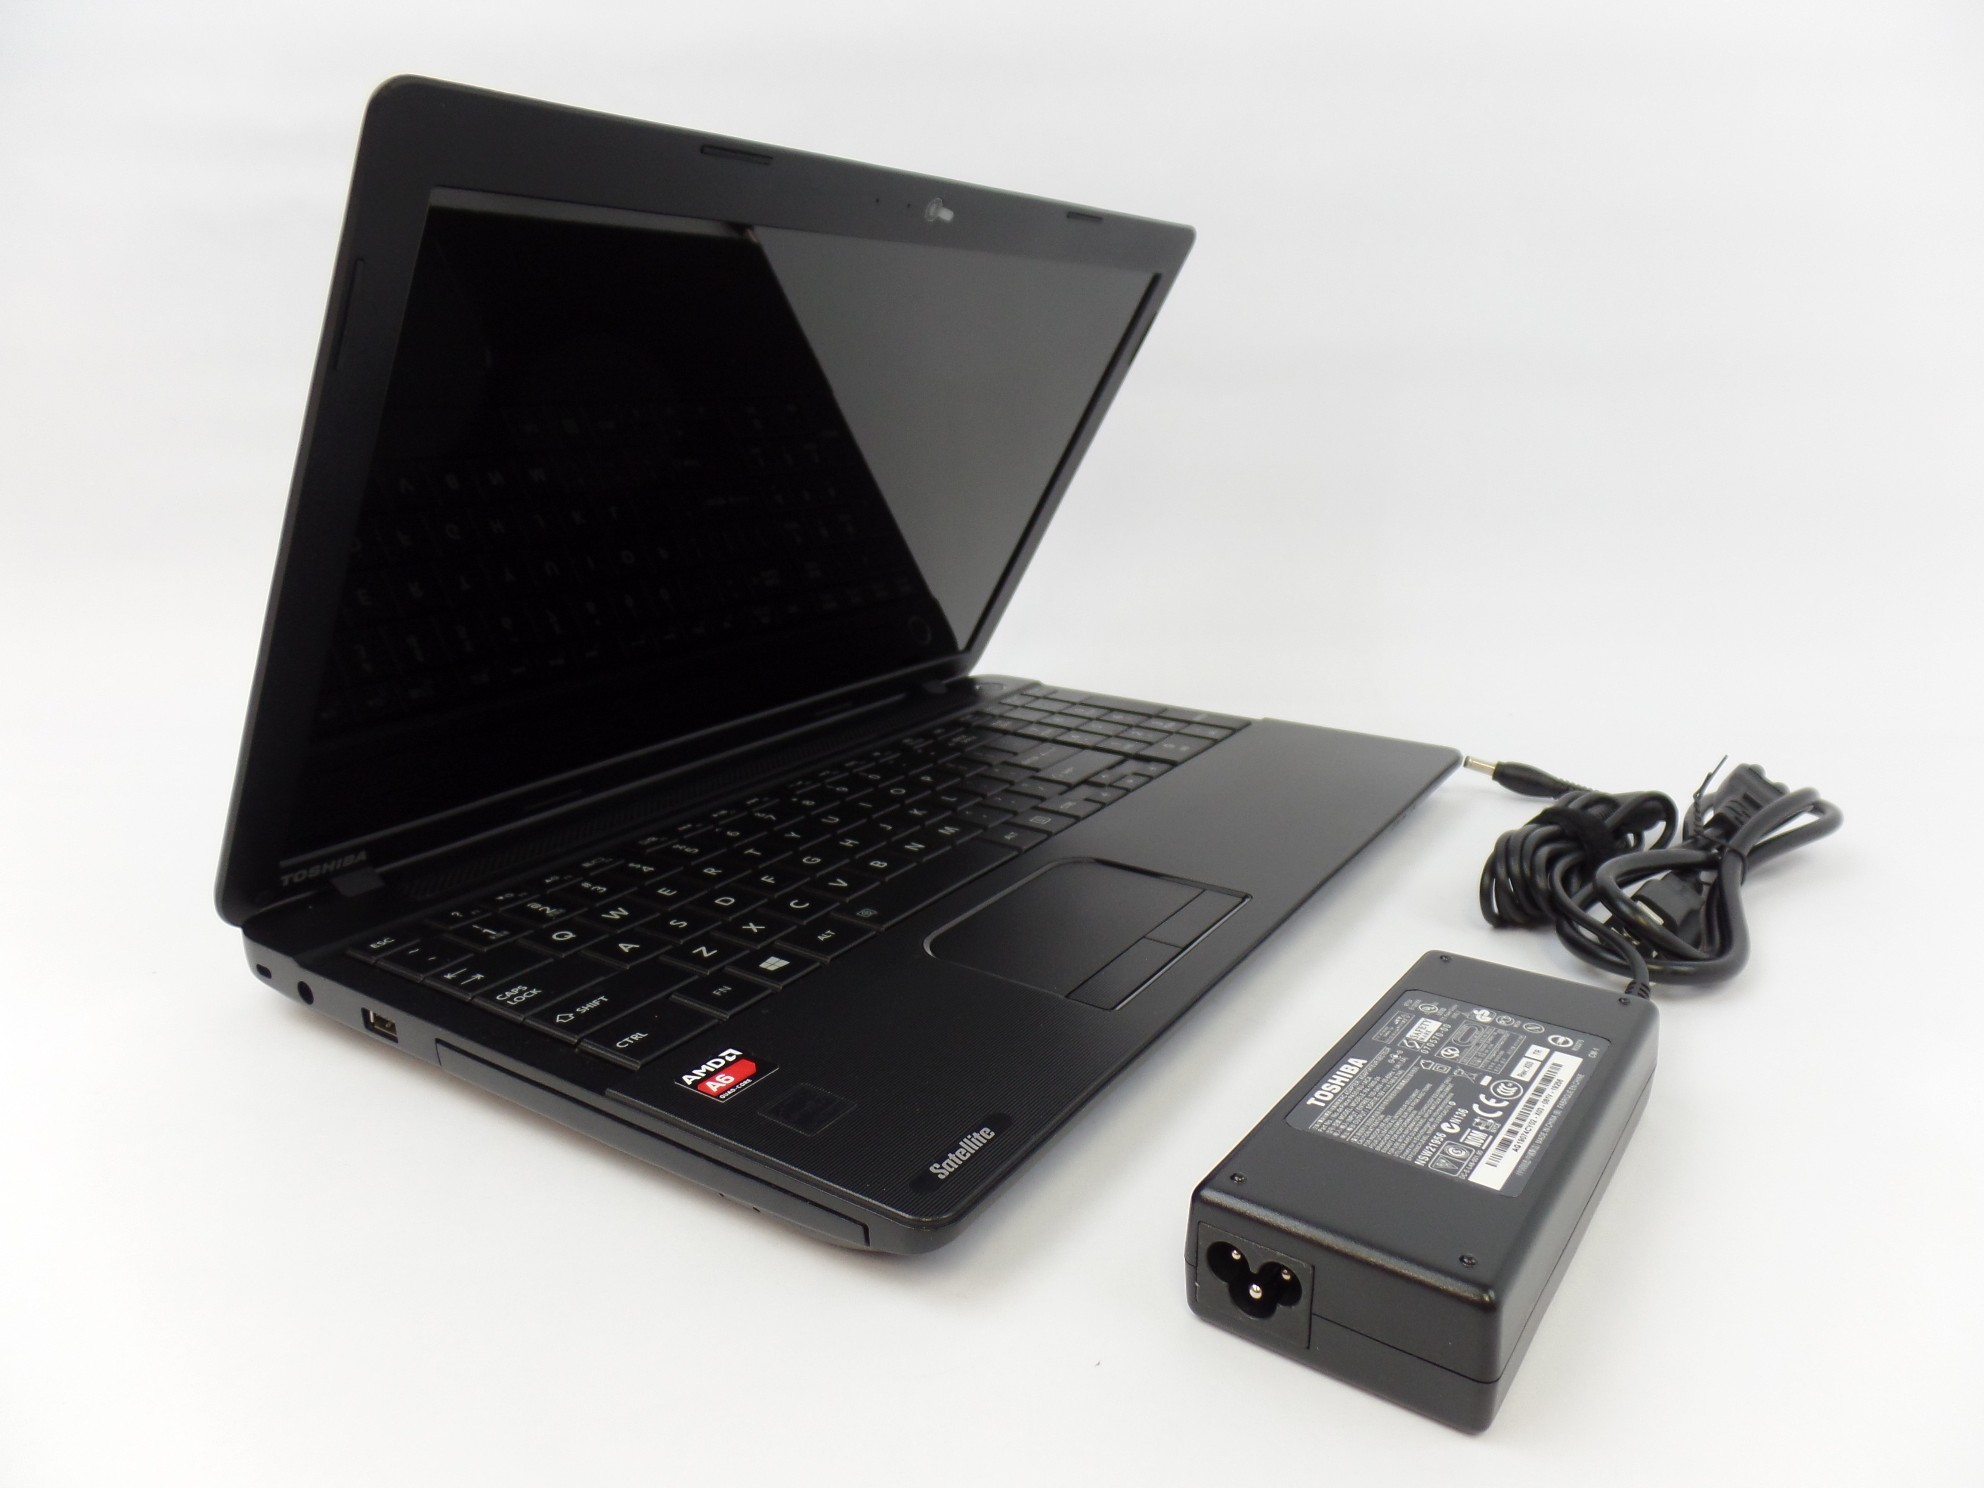 Toshiba Satellite C55D-A5107 15.6" AMD A6-5200 4GB RAM 750GB HDD W10H Laptop